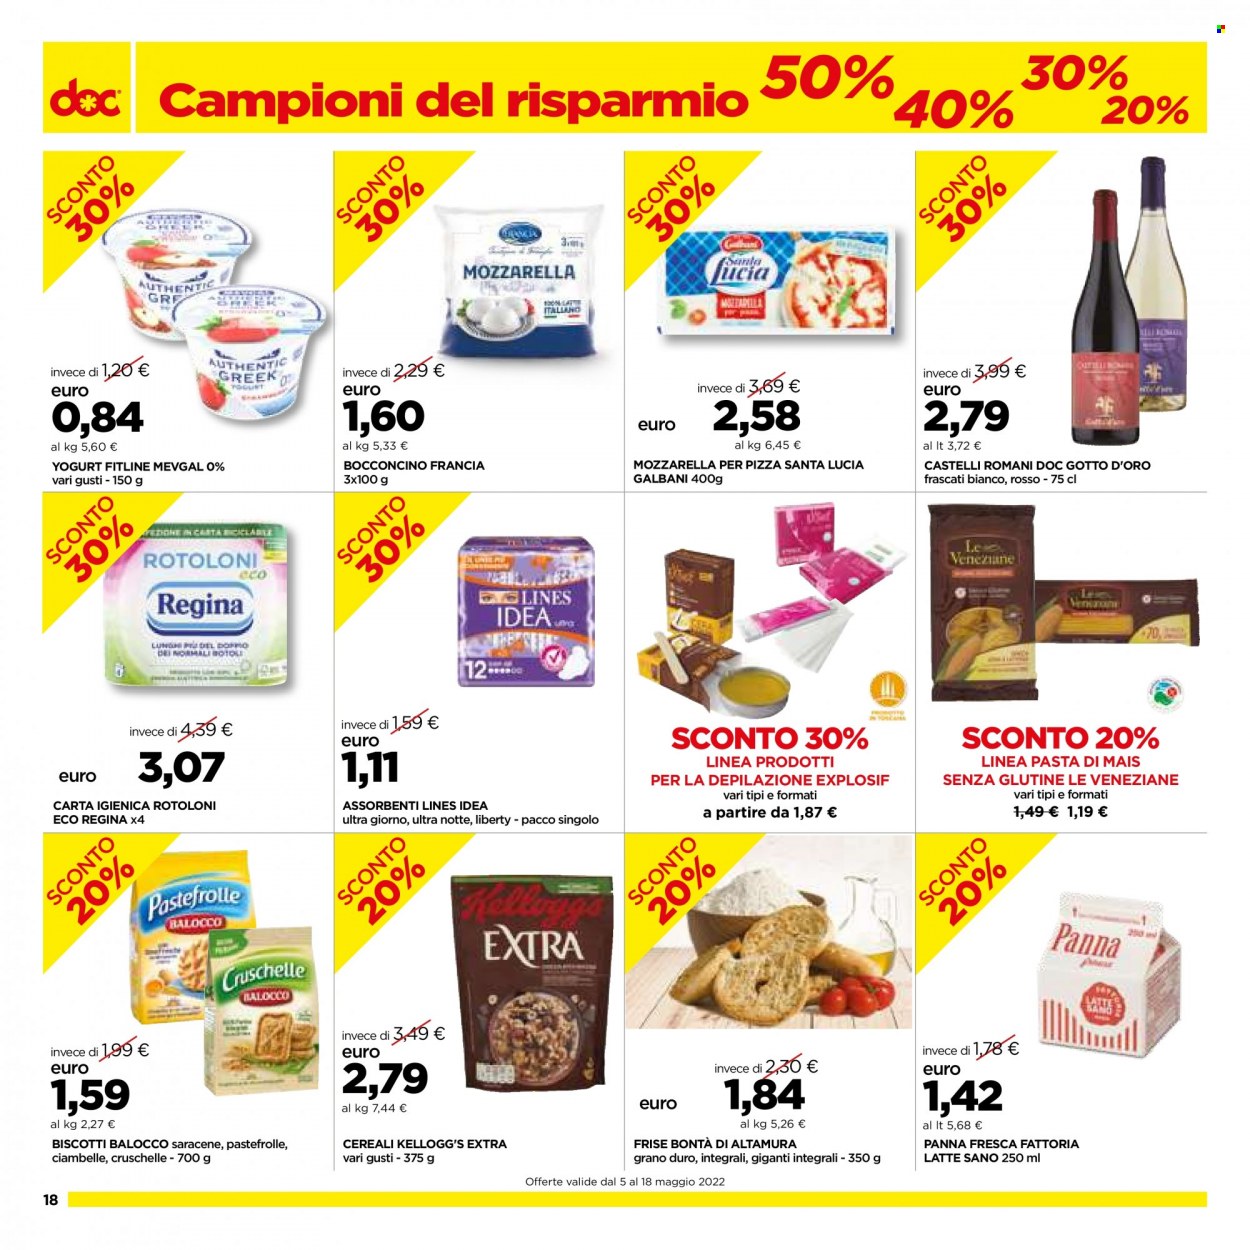 Volantino doc supermercati - 5.5.2022 - 18.5.2022. Pagina 18.